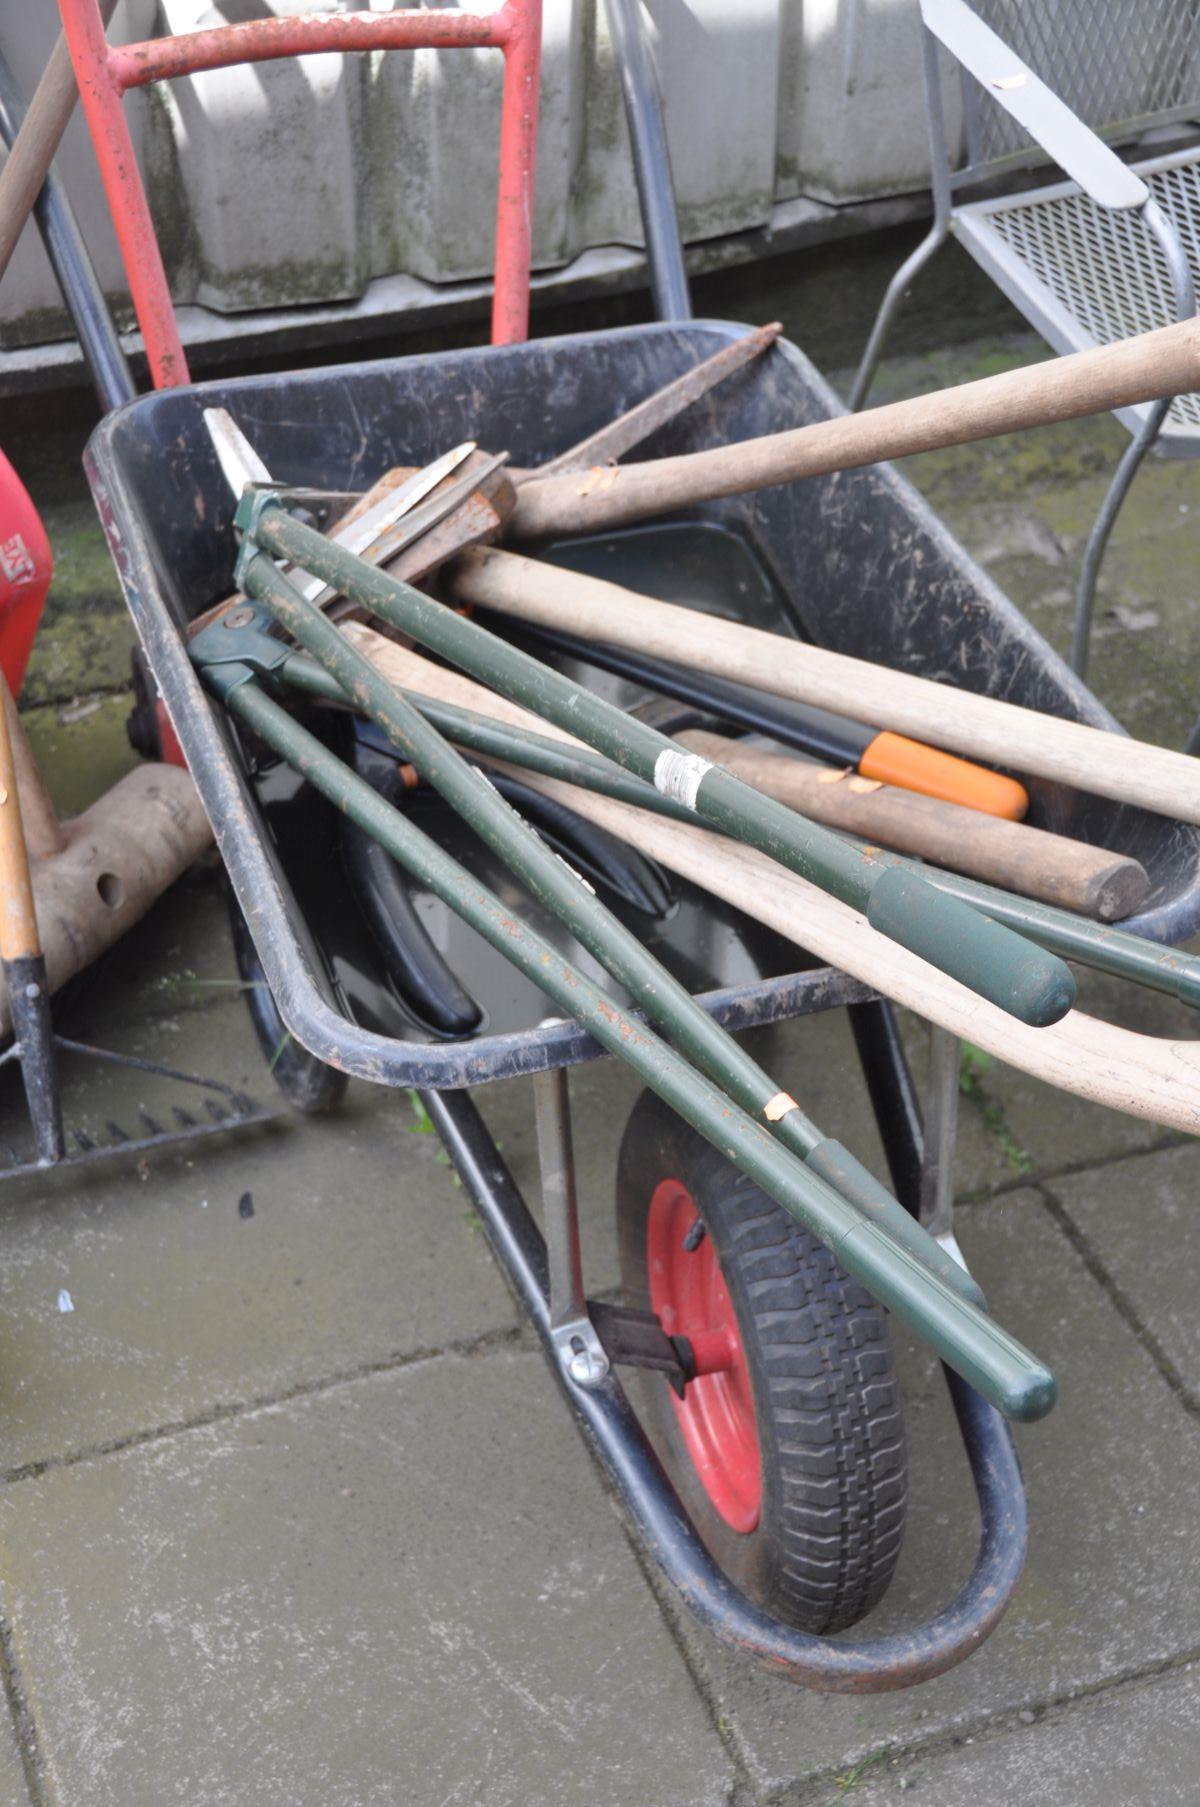 A QUANTITY OF GARDEN TOOLS, to include five spades, one shovel, outdoor brushes, axe, garden shears, - Bild 2 aus 2